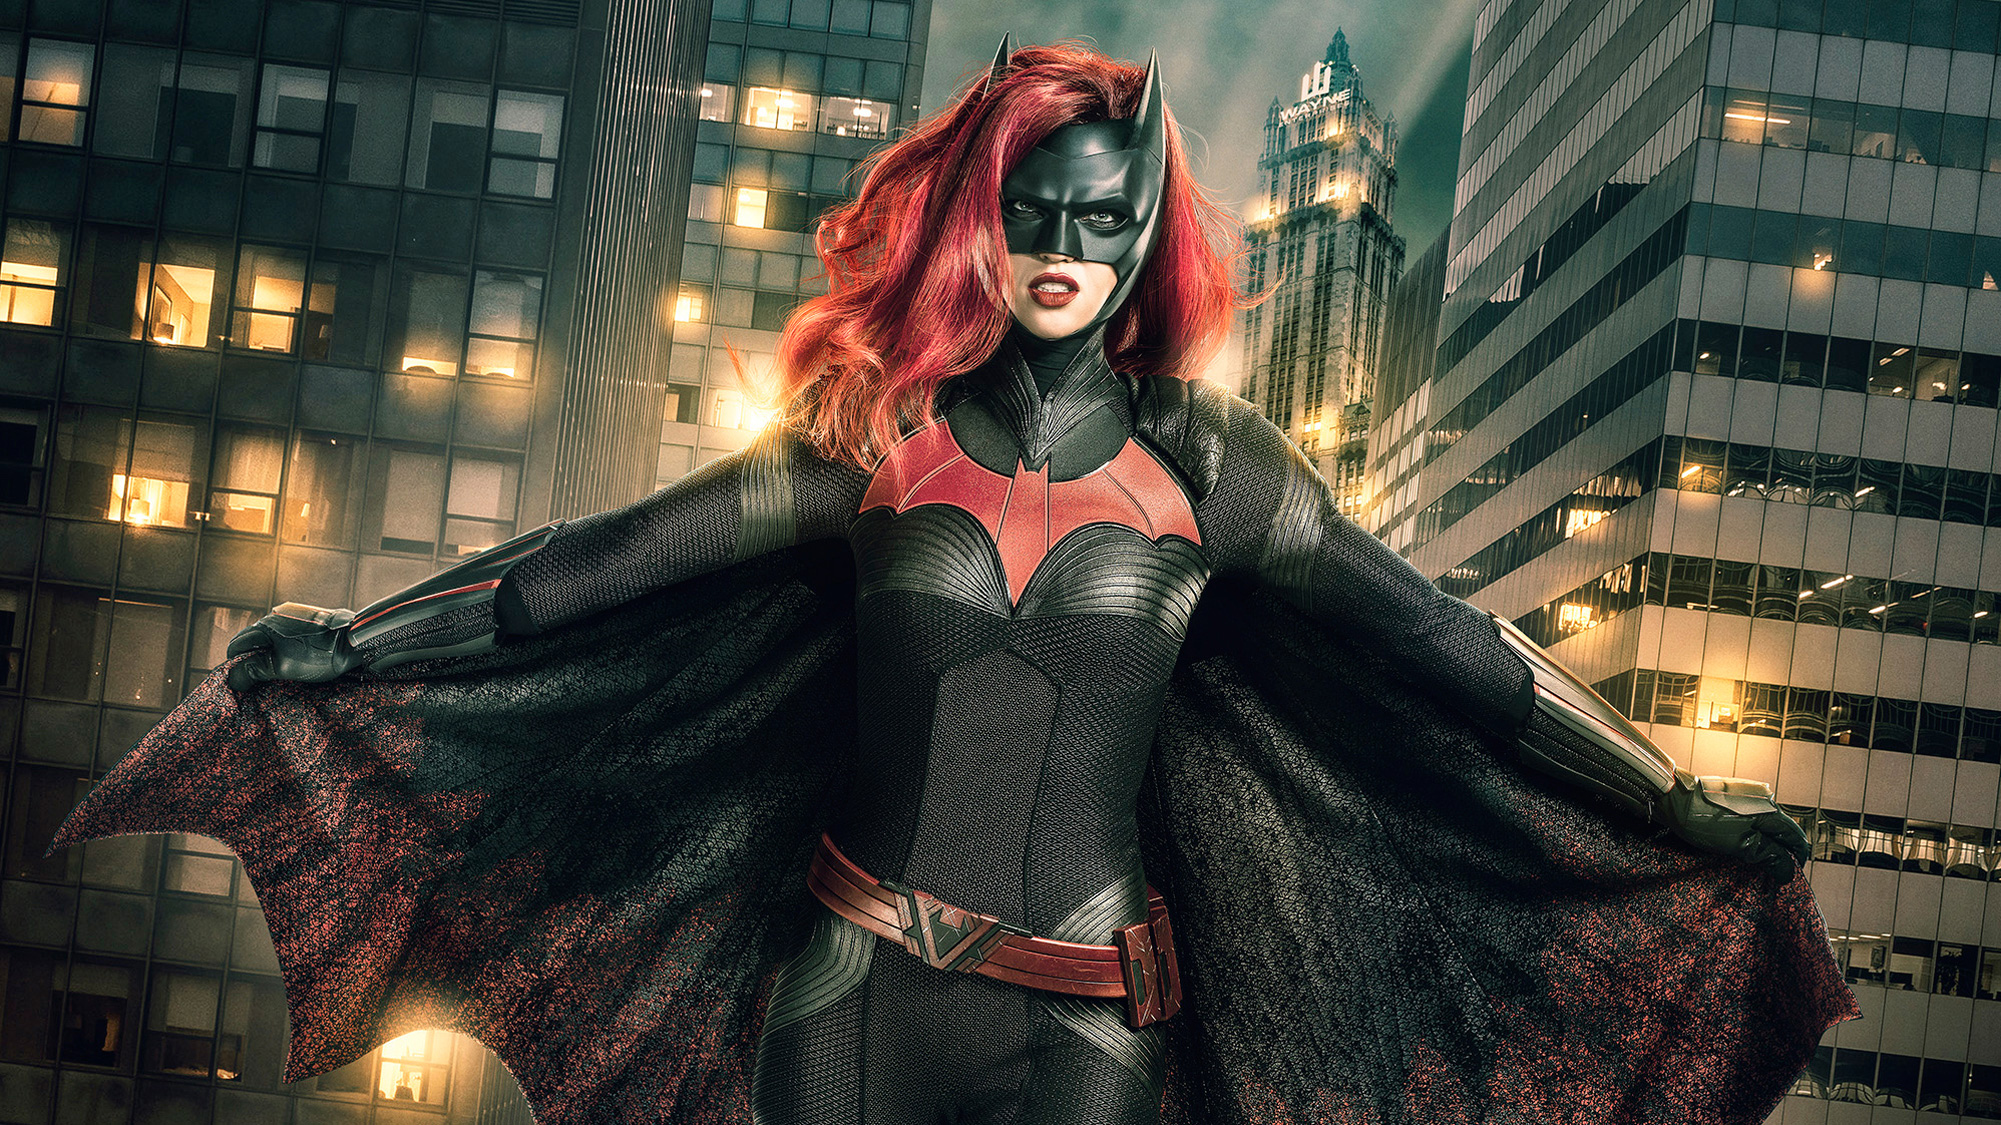 fond d'écran batwoman,personnage fictif,homme chauve souris,super héros,oeuvre de cg,supervillain